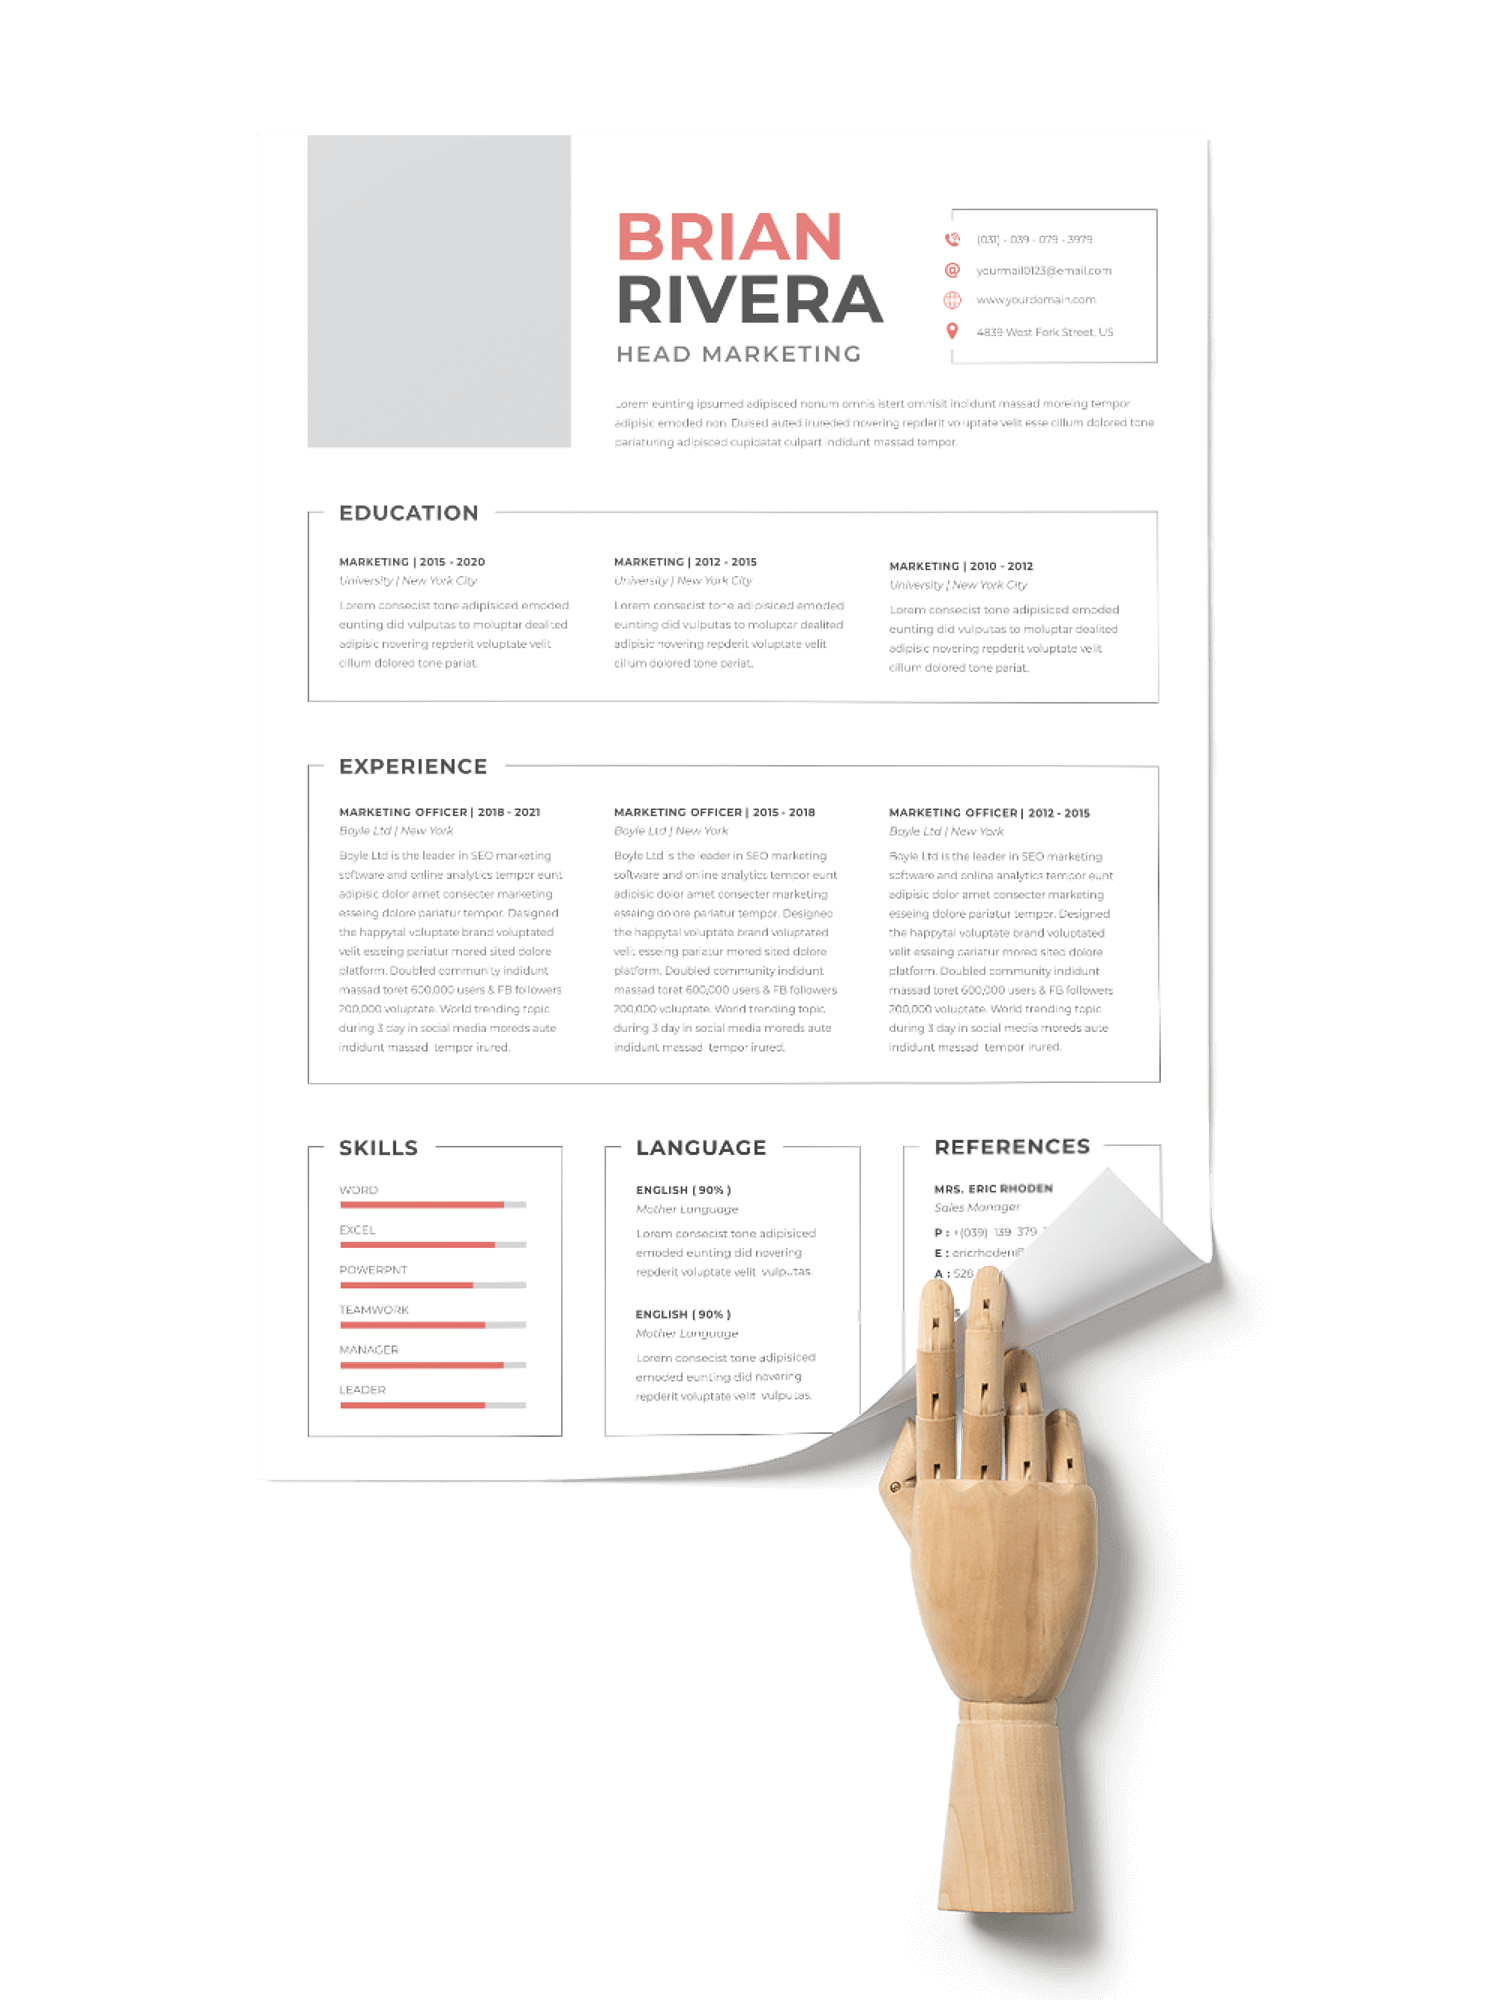 CV #123 Brian Rivera